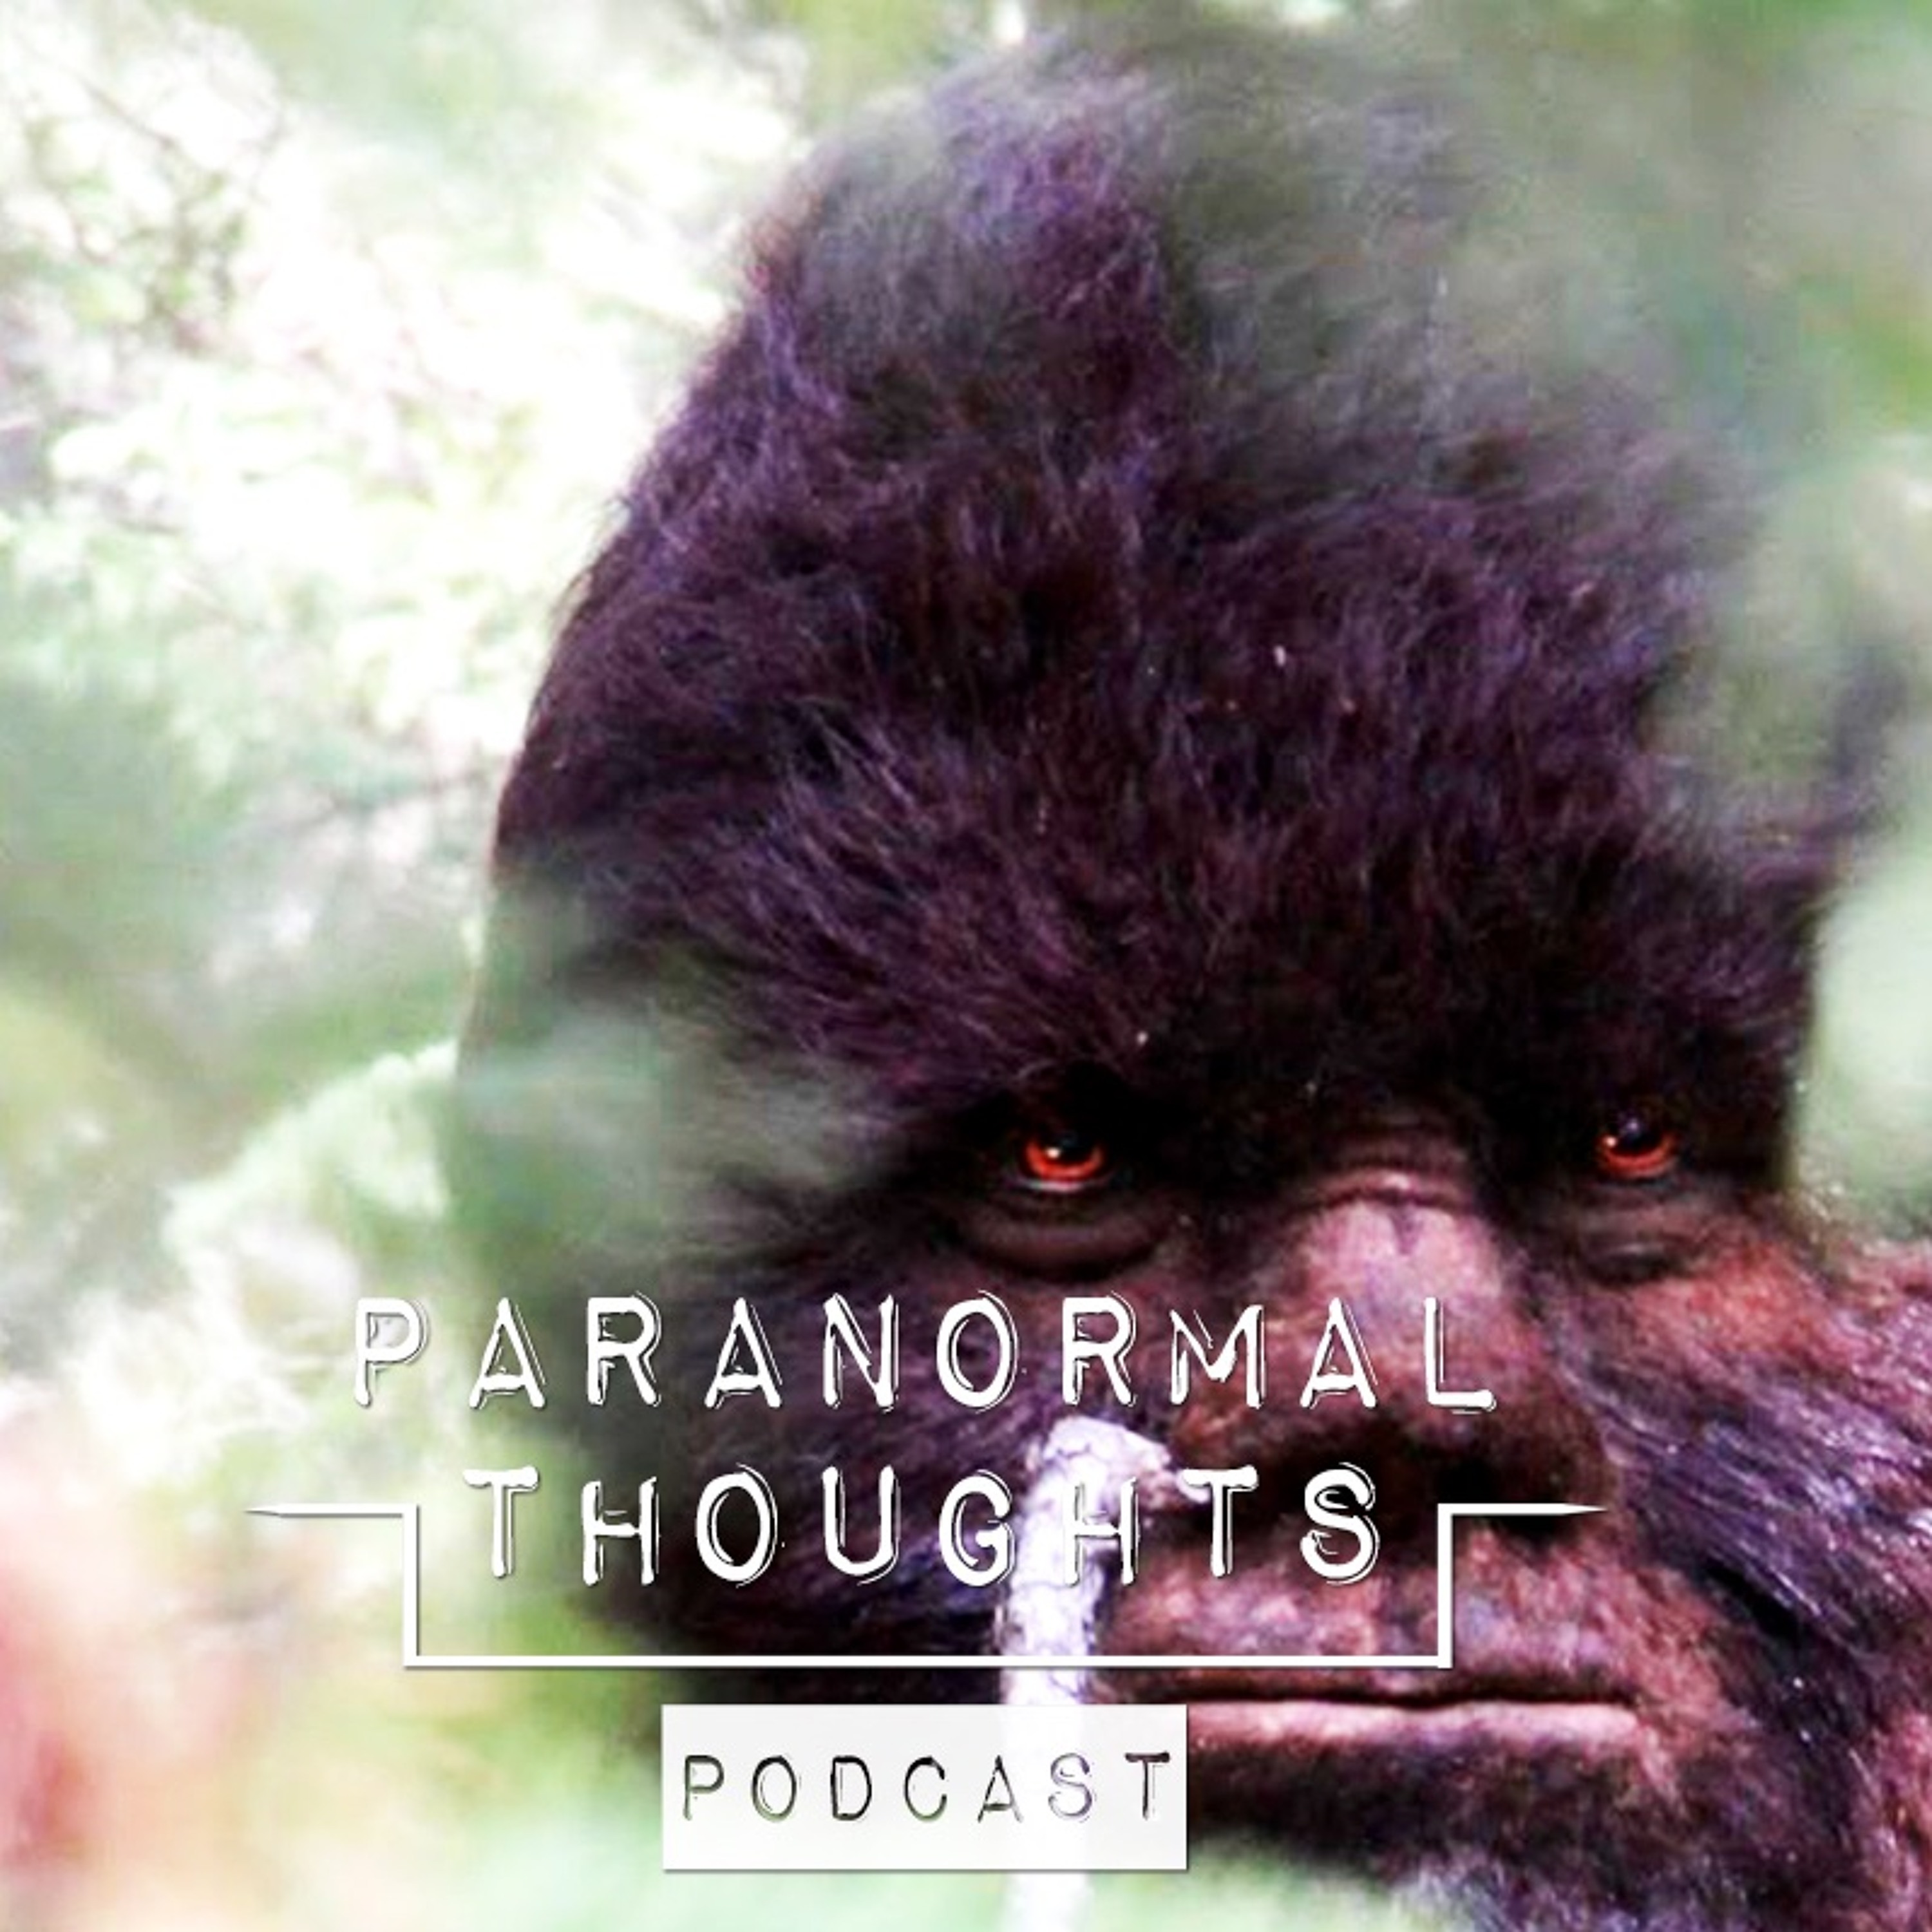 Bigfoot - Sasquatch - Yowie - Yeti Podcast